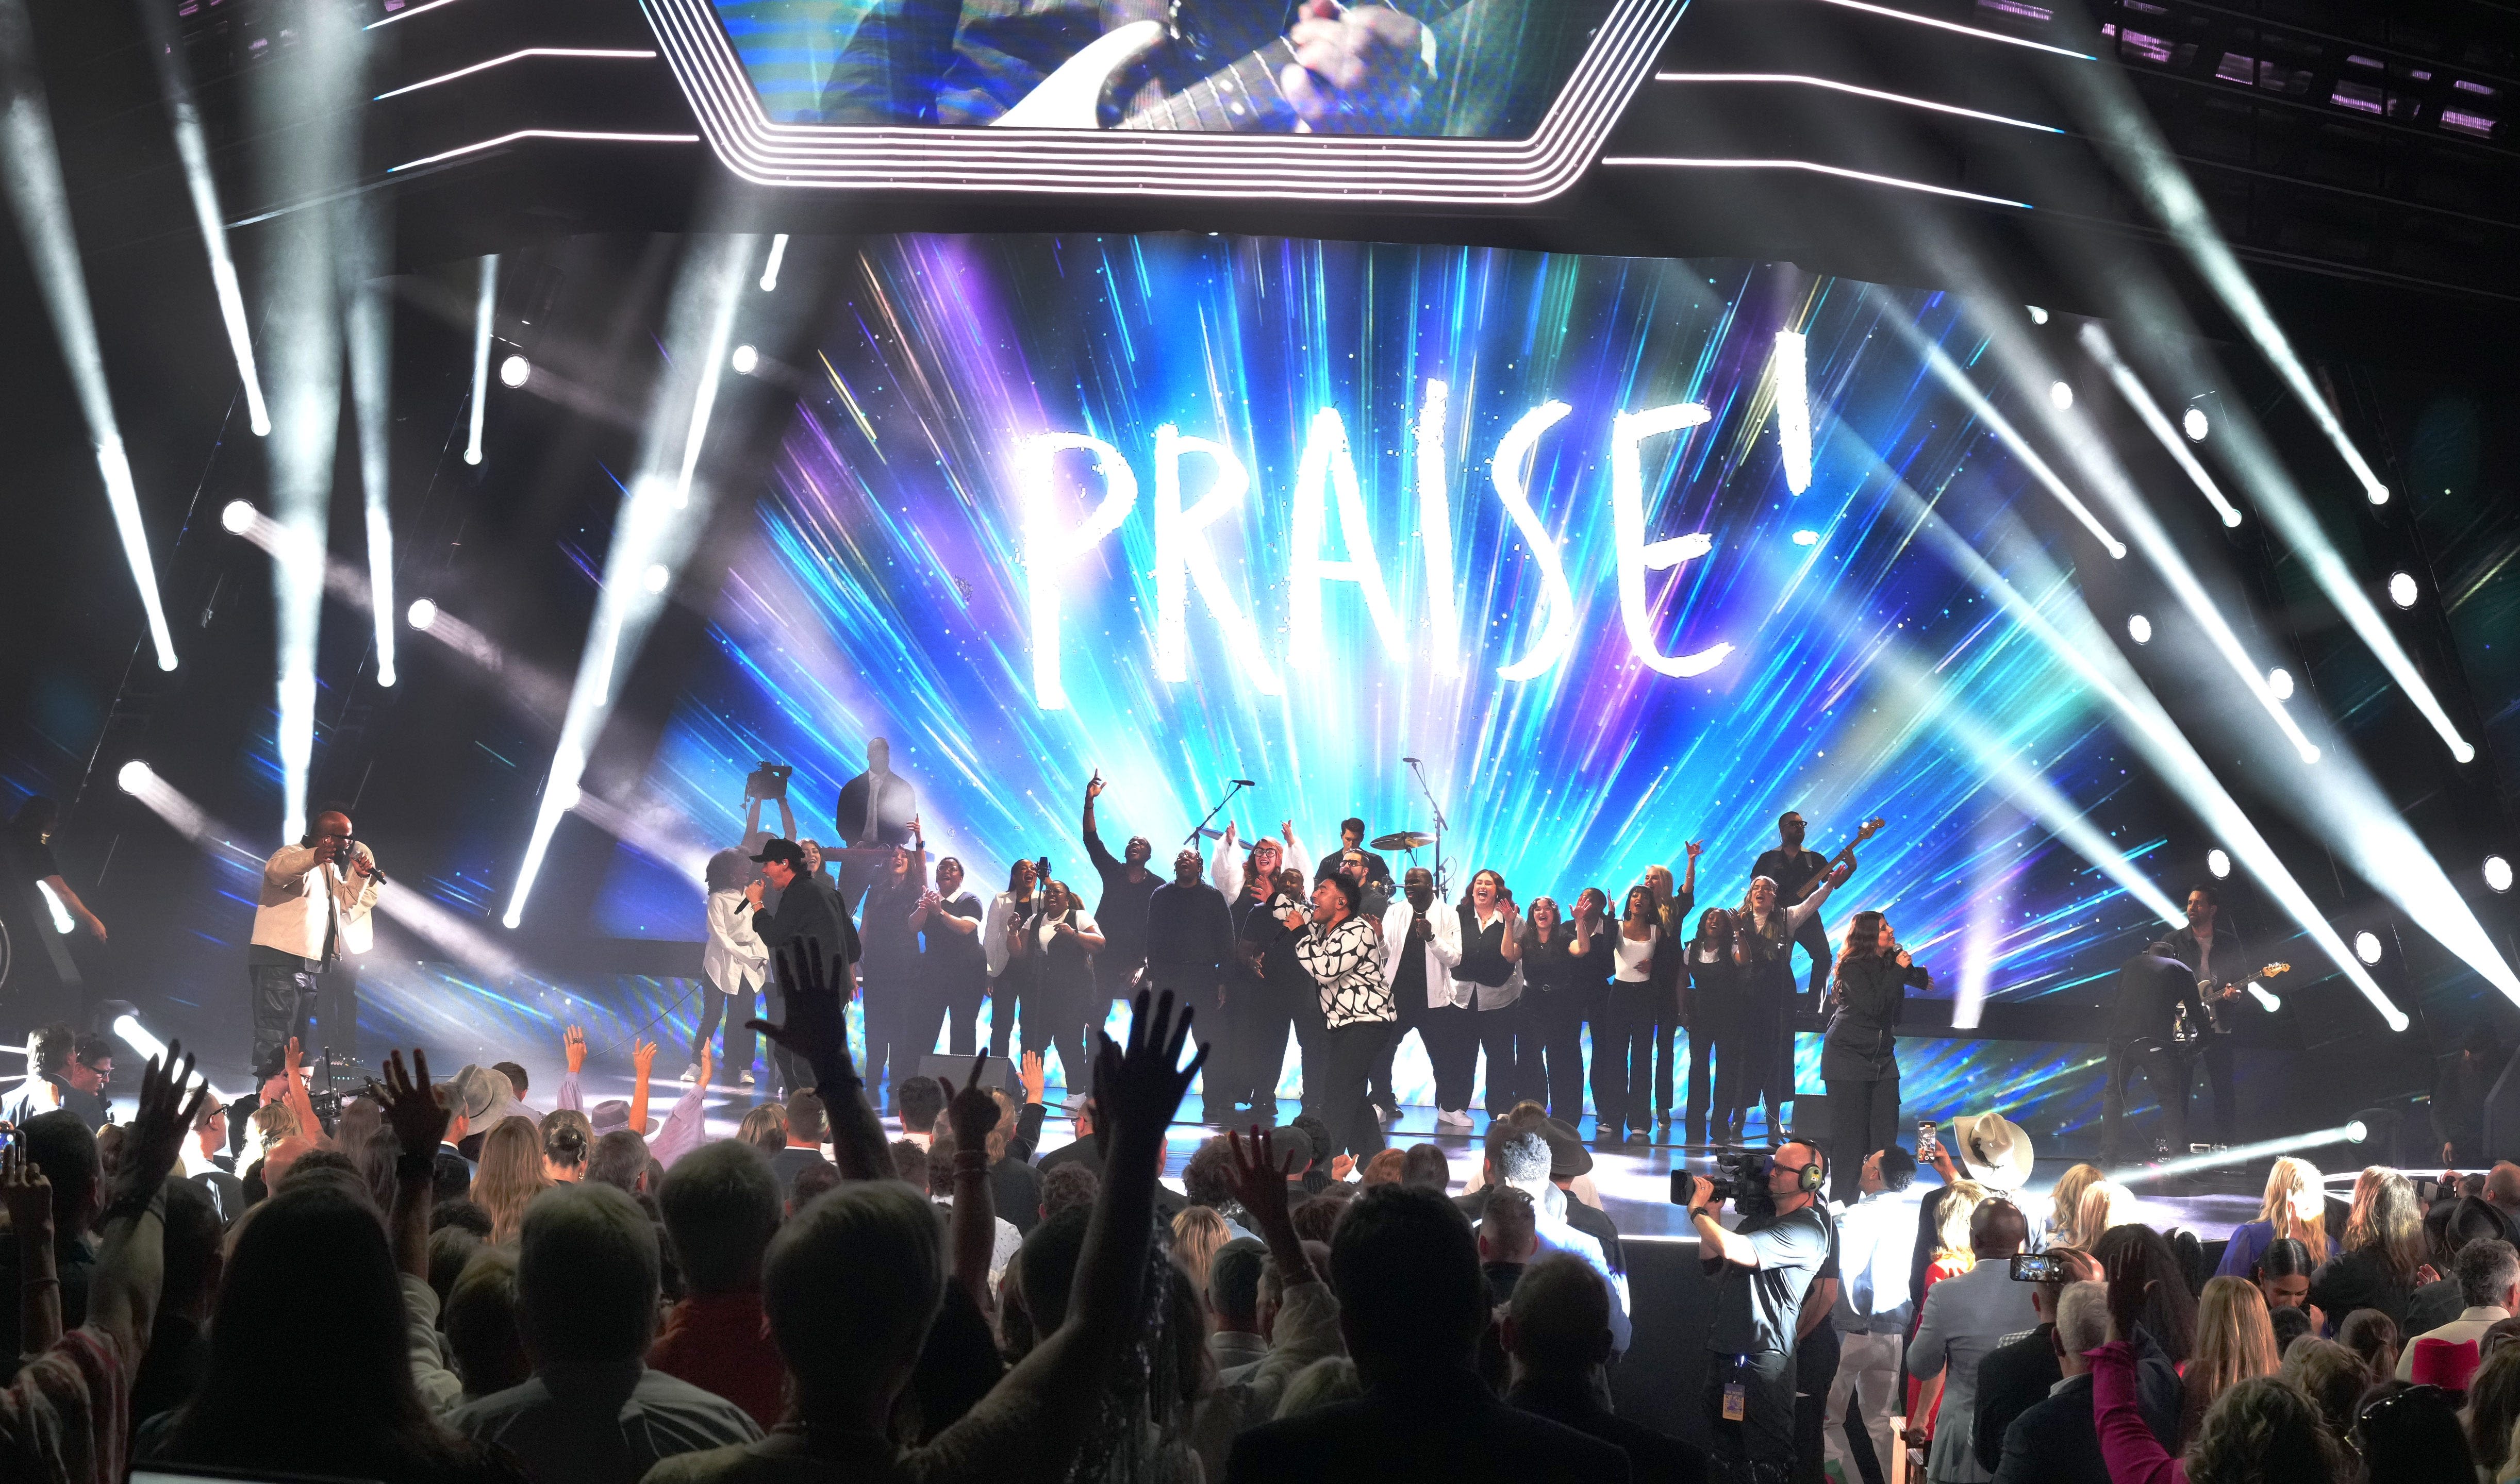 Elevation Worship set to bring night of exuberant worship to Nashville's Ryman Auditorium